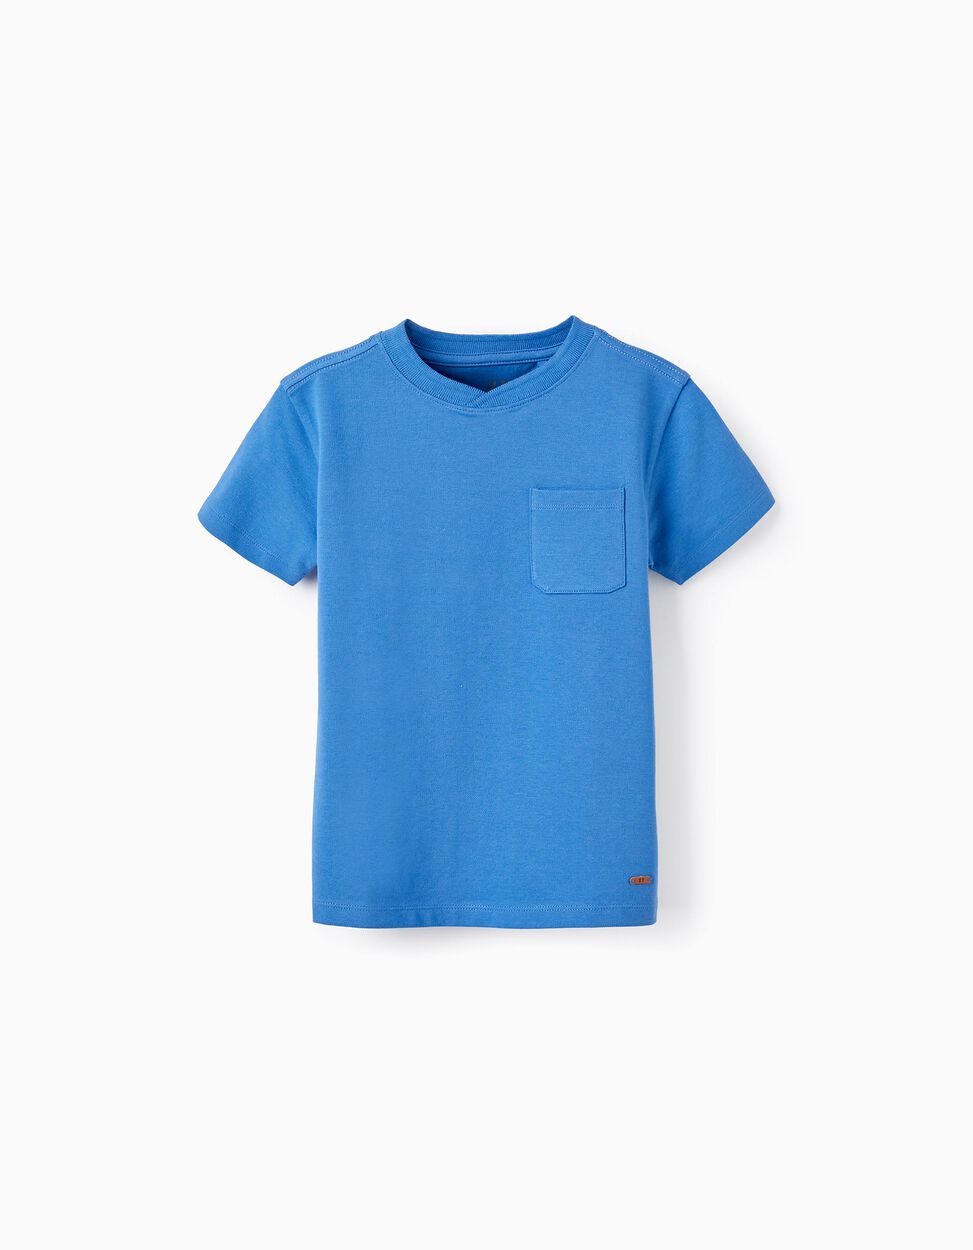 Comprar Online Camiseta de Manga Corta en Piqué de Algodón para Niño, Azul